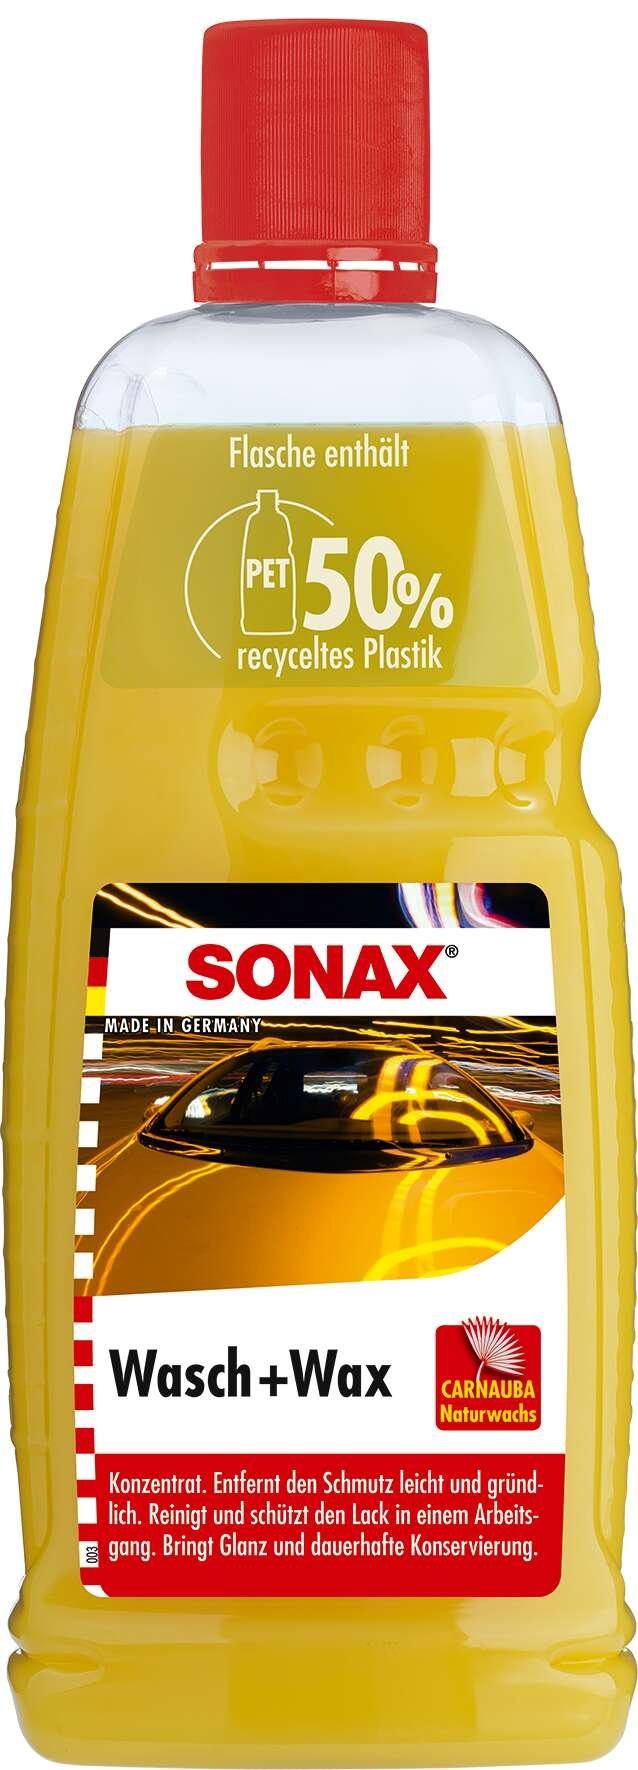 SONAX Wasch + Wax 1000 ml PET-Flasche